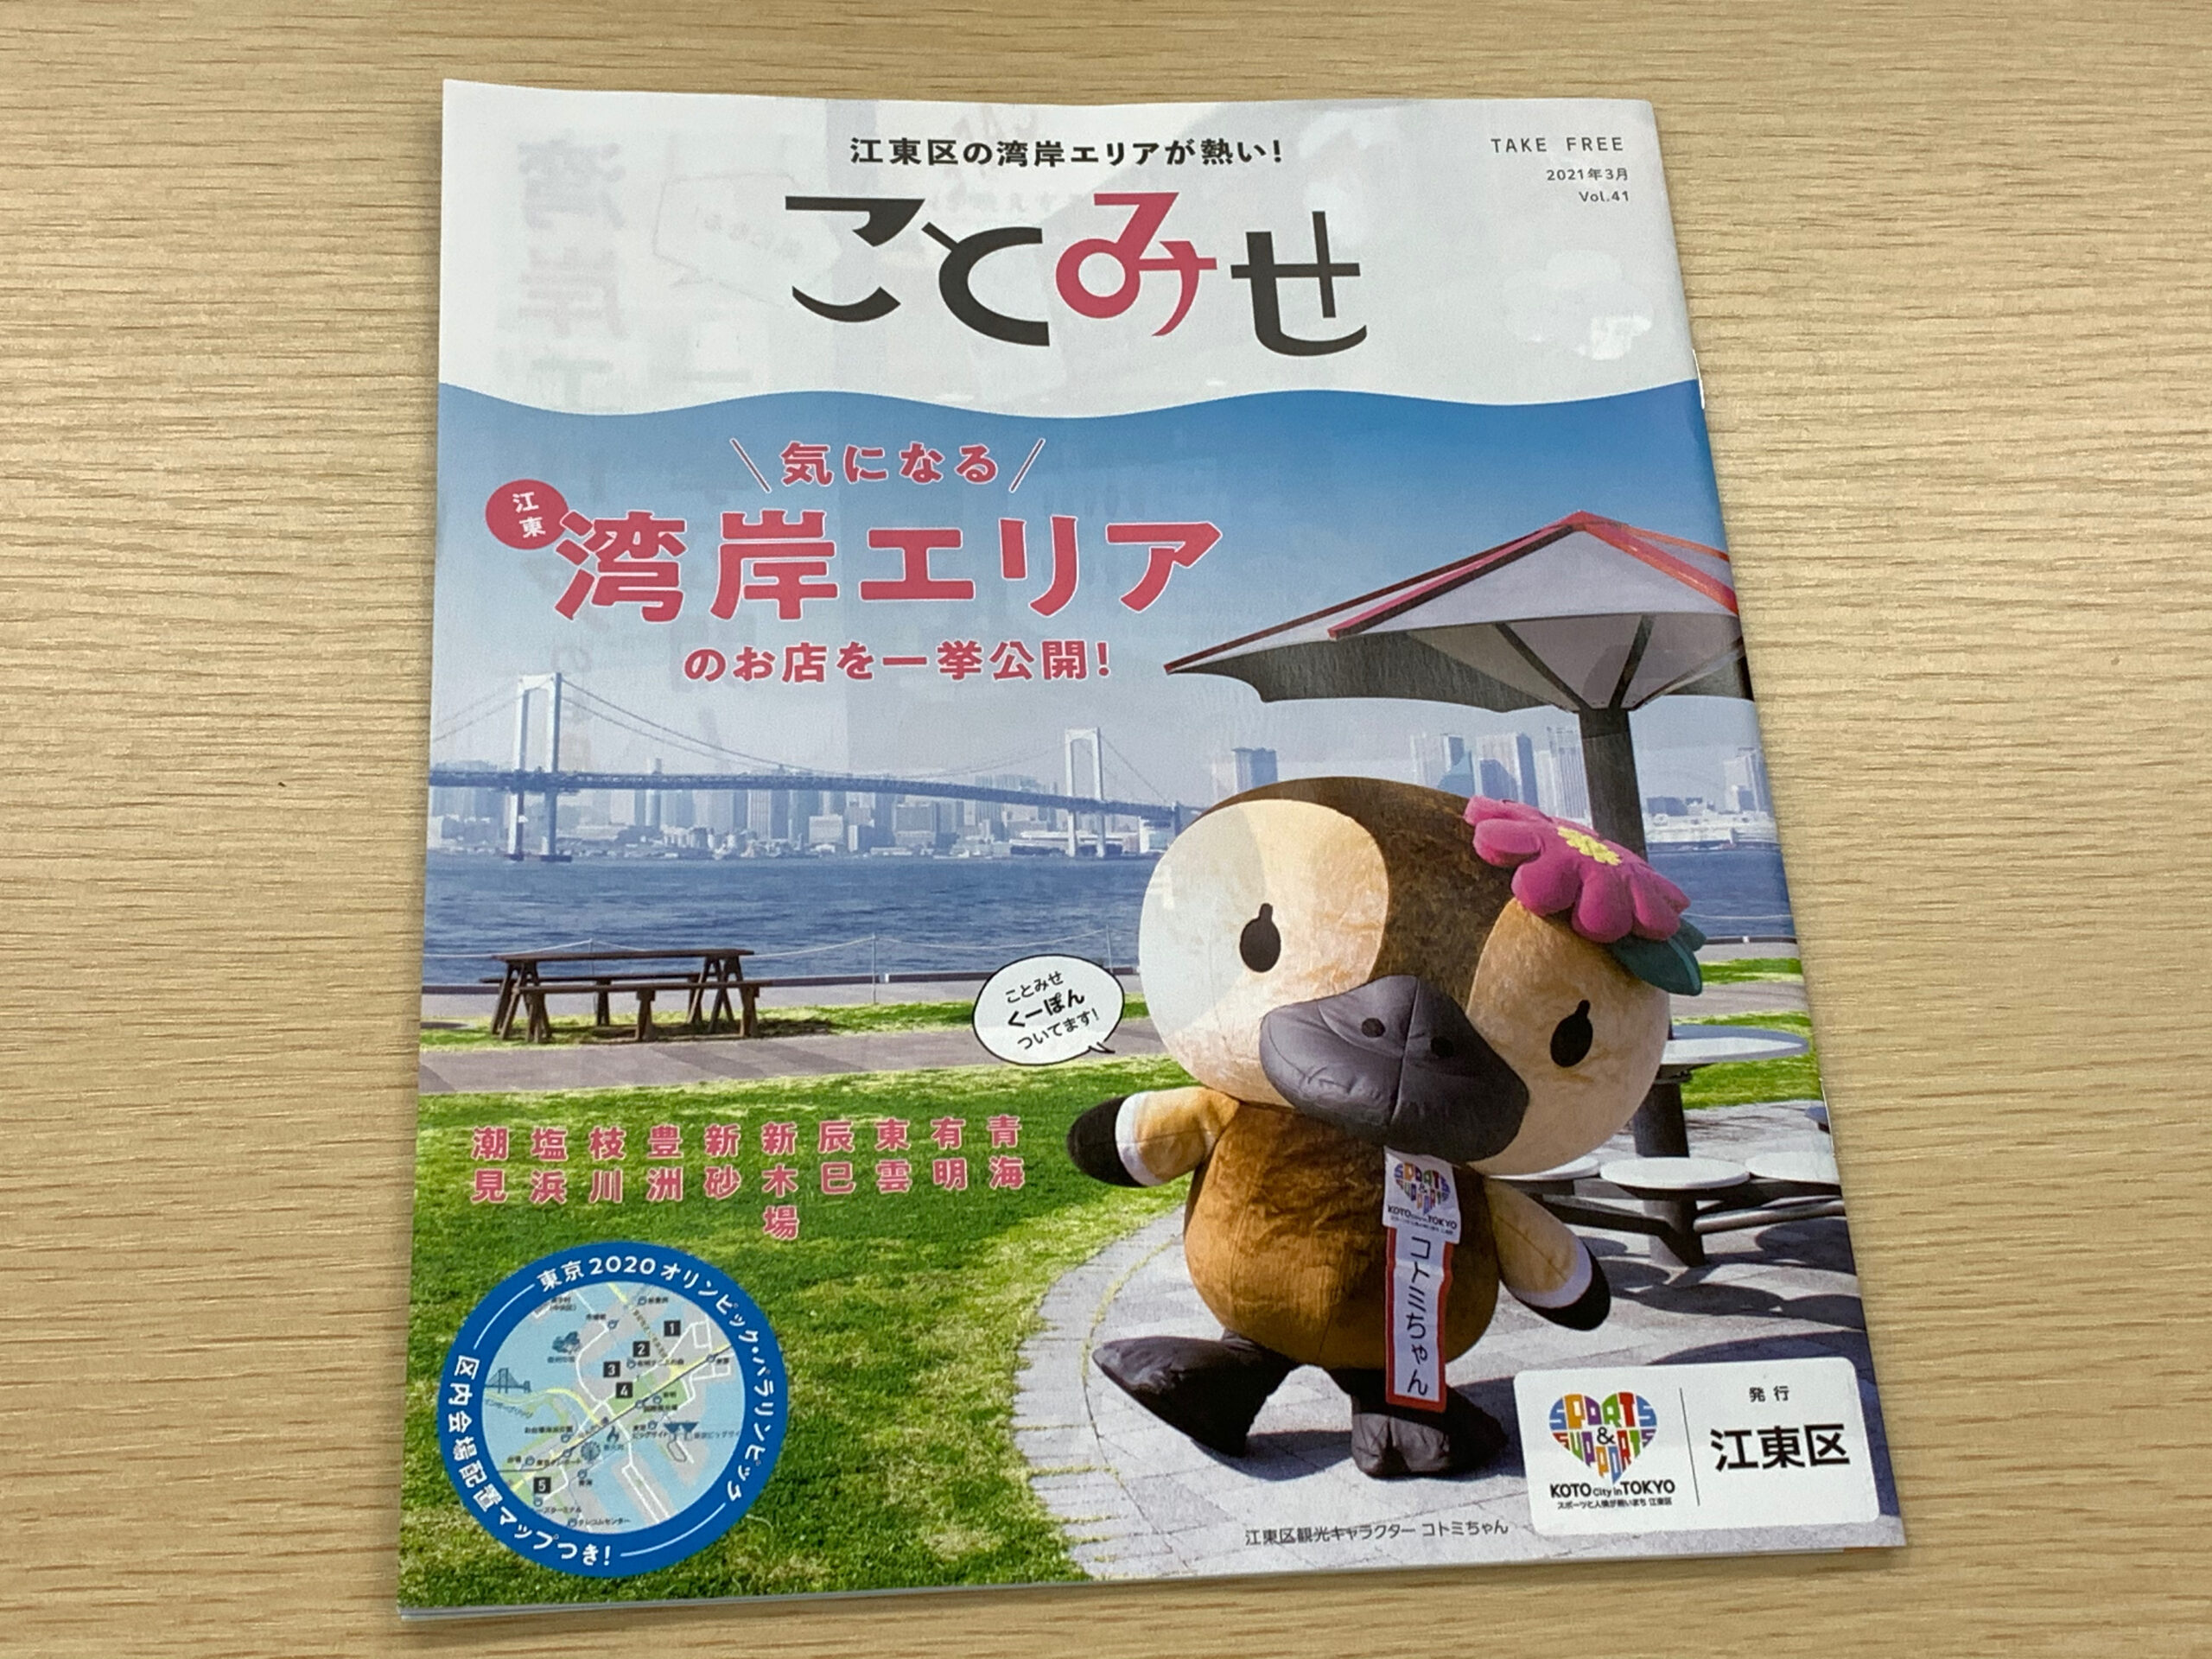 【ことみせ】江東区の地域情報誌3月号が無料発刊中です。今回は湾岸エリア特集です。